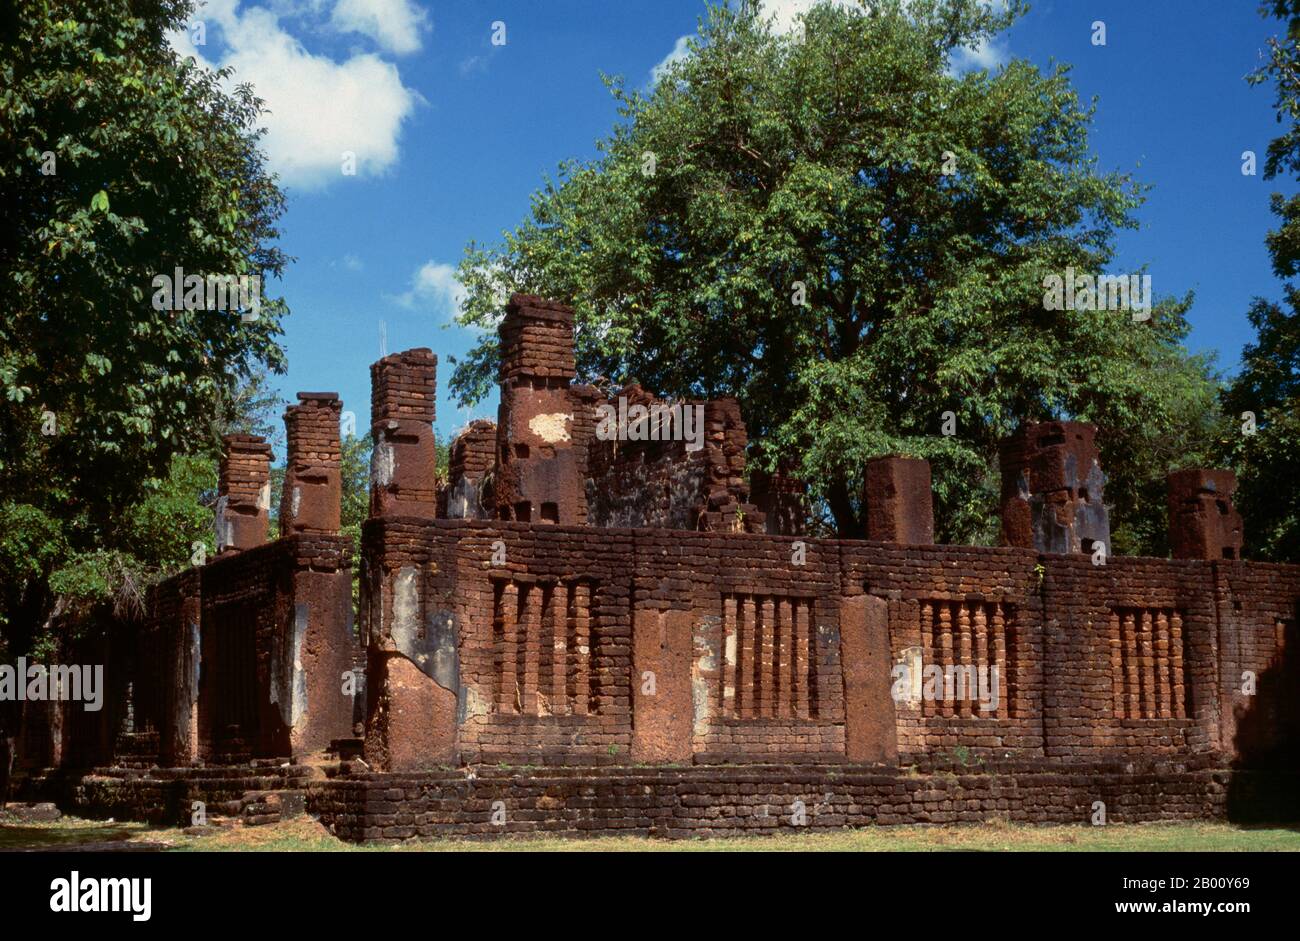 Thailandia: Wat Phra non, Parco storico di Kamphaeng Phet. Kamphaeng Phet Historical Park nel centro della Thailandia era una volta parte del regno di Sukhothai che fiorì nel XIII e XIV secolo. Il regno di Sukhothai fu il primo dei regni tailandesi. Sukhothai, che letteralmente significa "Alba della felicità", fu la capitale del regno di Sukhothai e fu fondata nel 1238. Fu la capitale dell'Impero Tailandese per circa 140 anni. Foto Stock